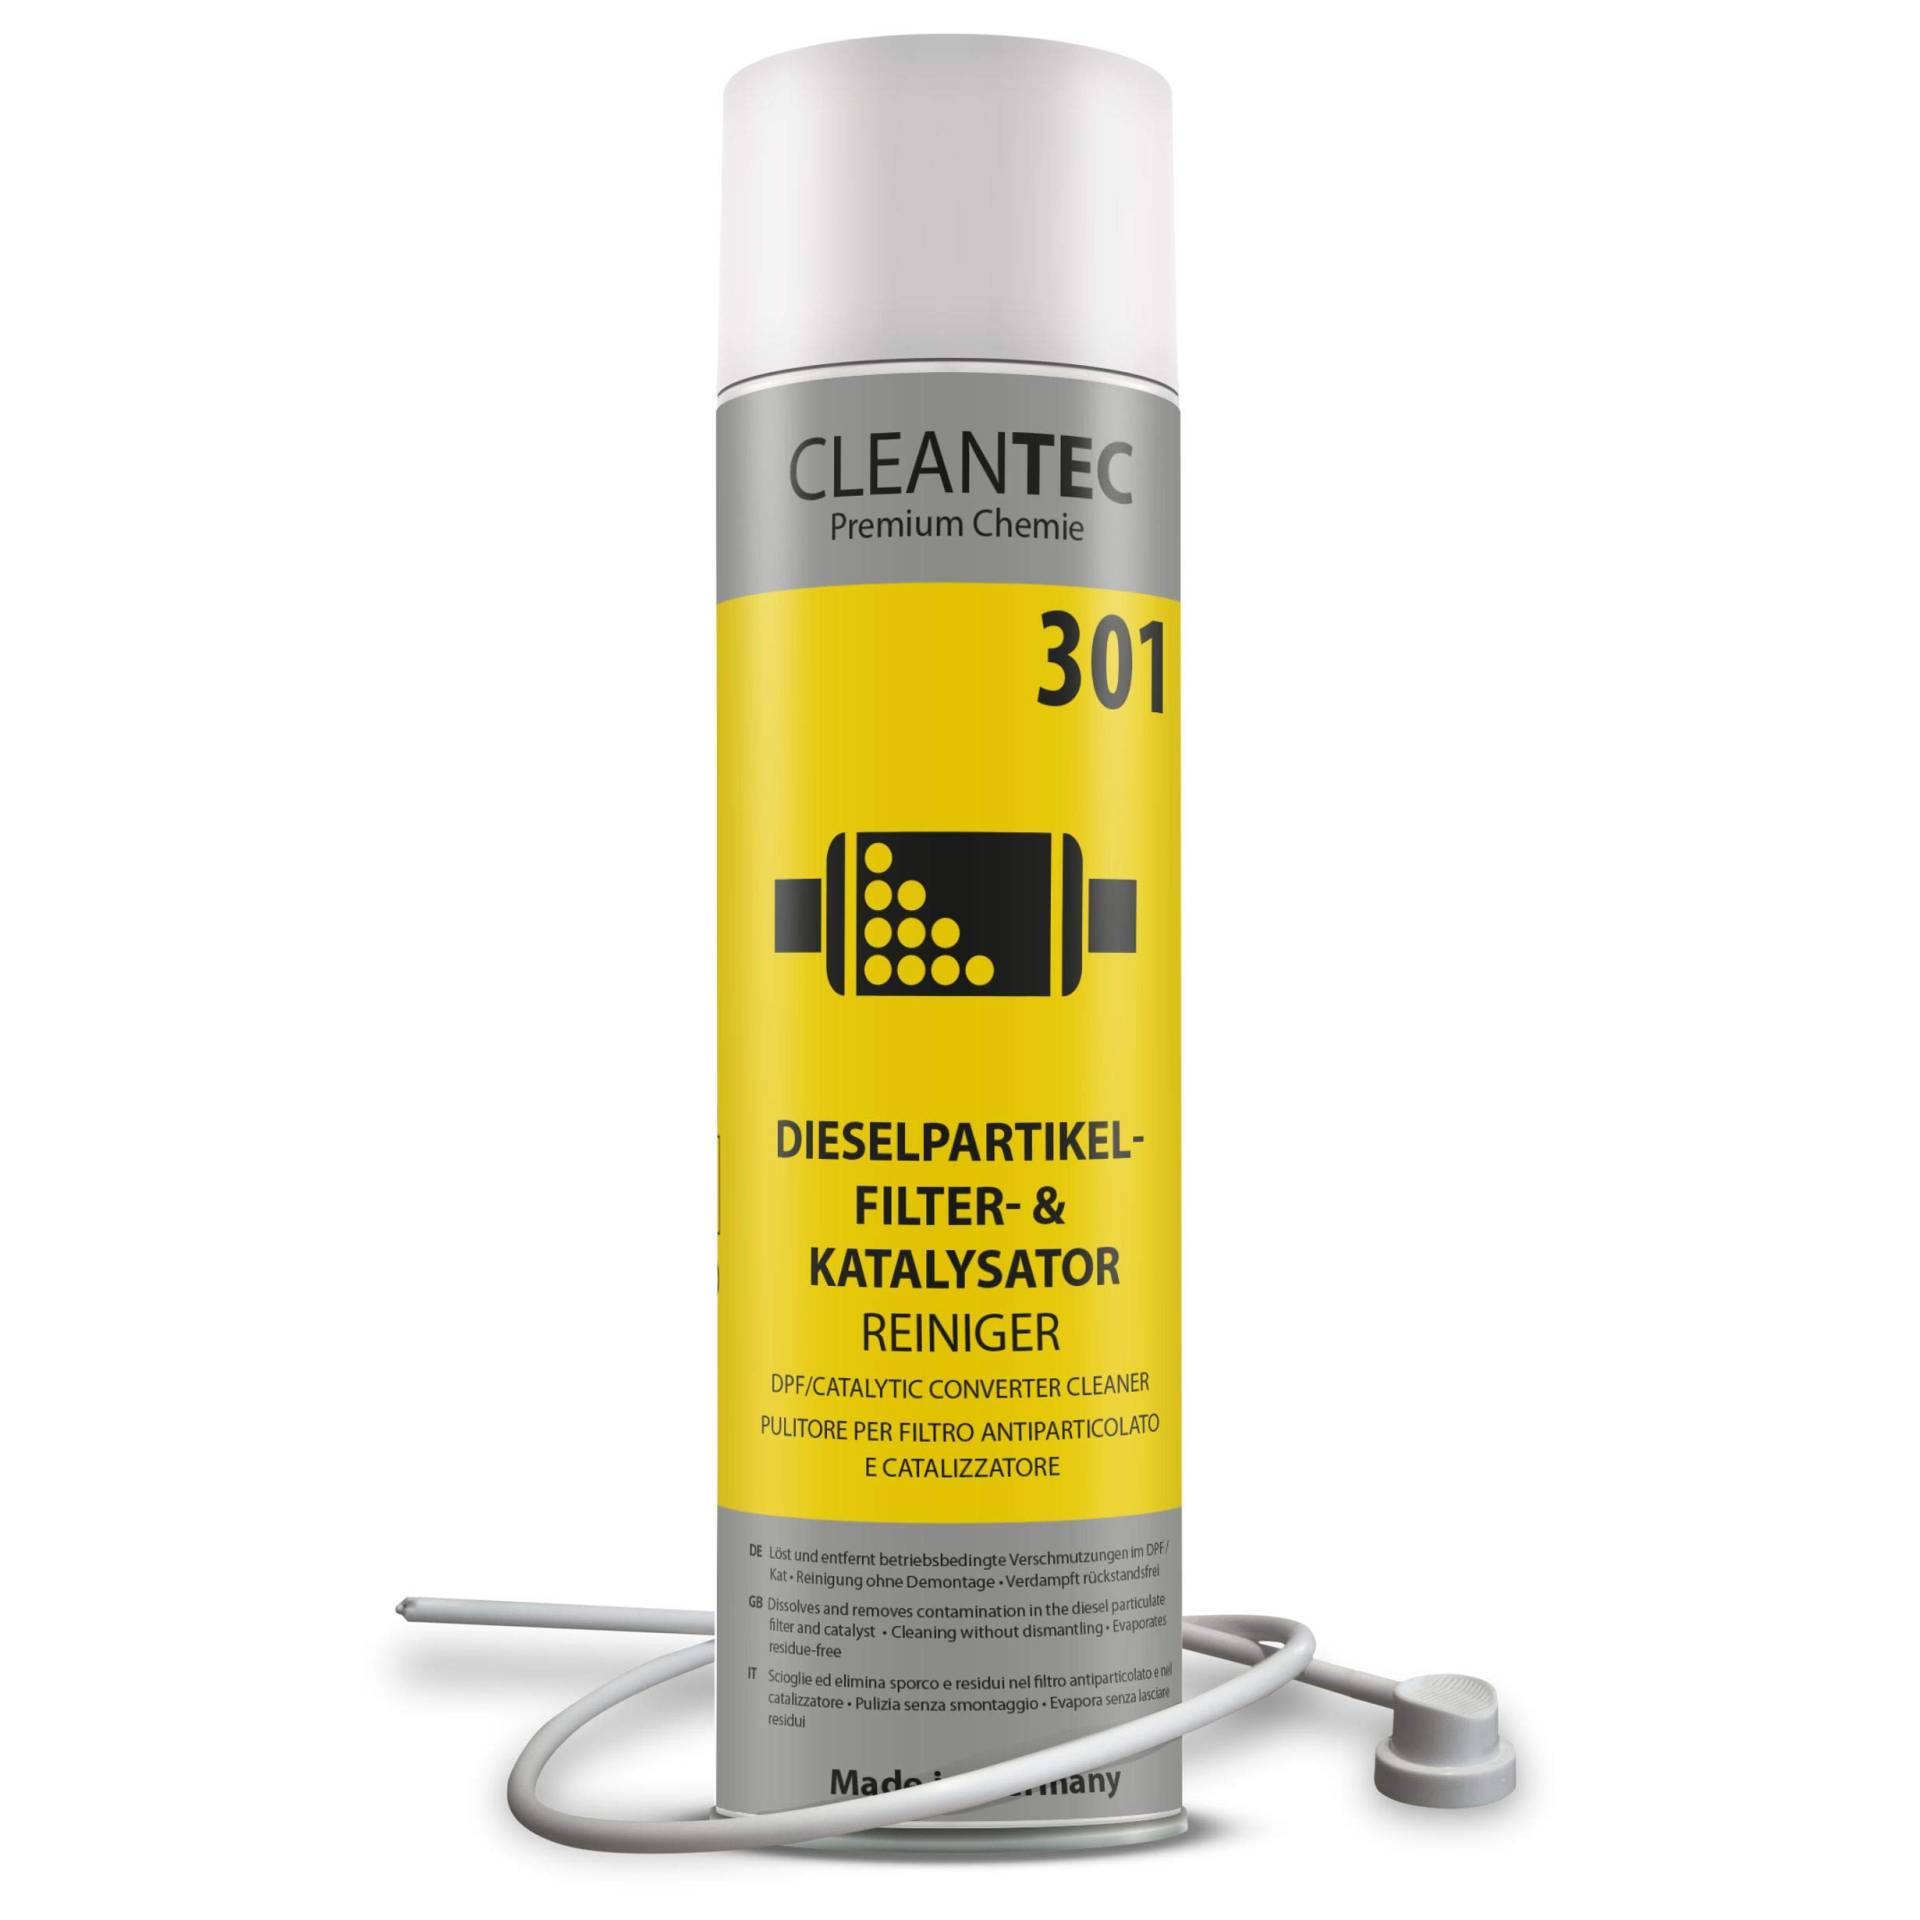 CleanTEC 301 Profi Dieselpartikelfilter und Kat intensiv Reiniger Spray mit Sonde 400ml (1) von cms CleanTEC GmbH